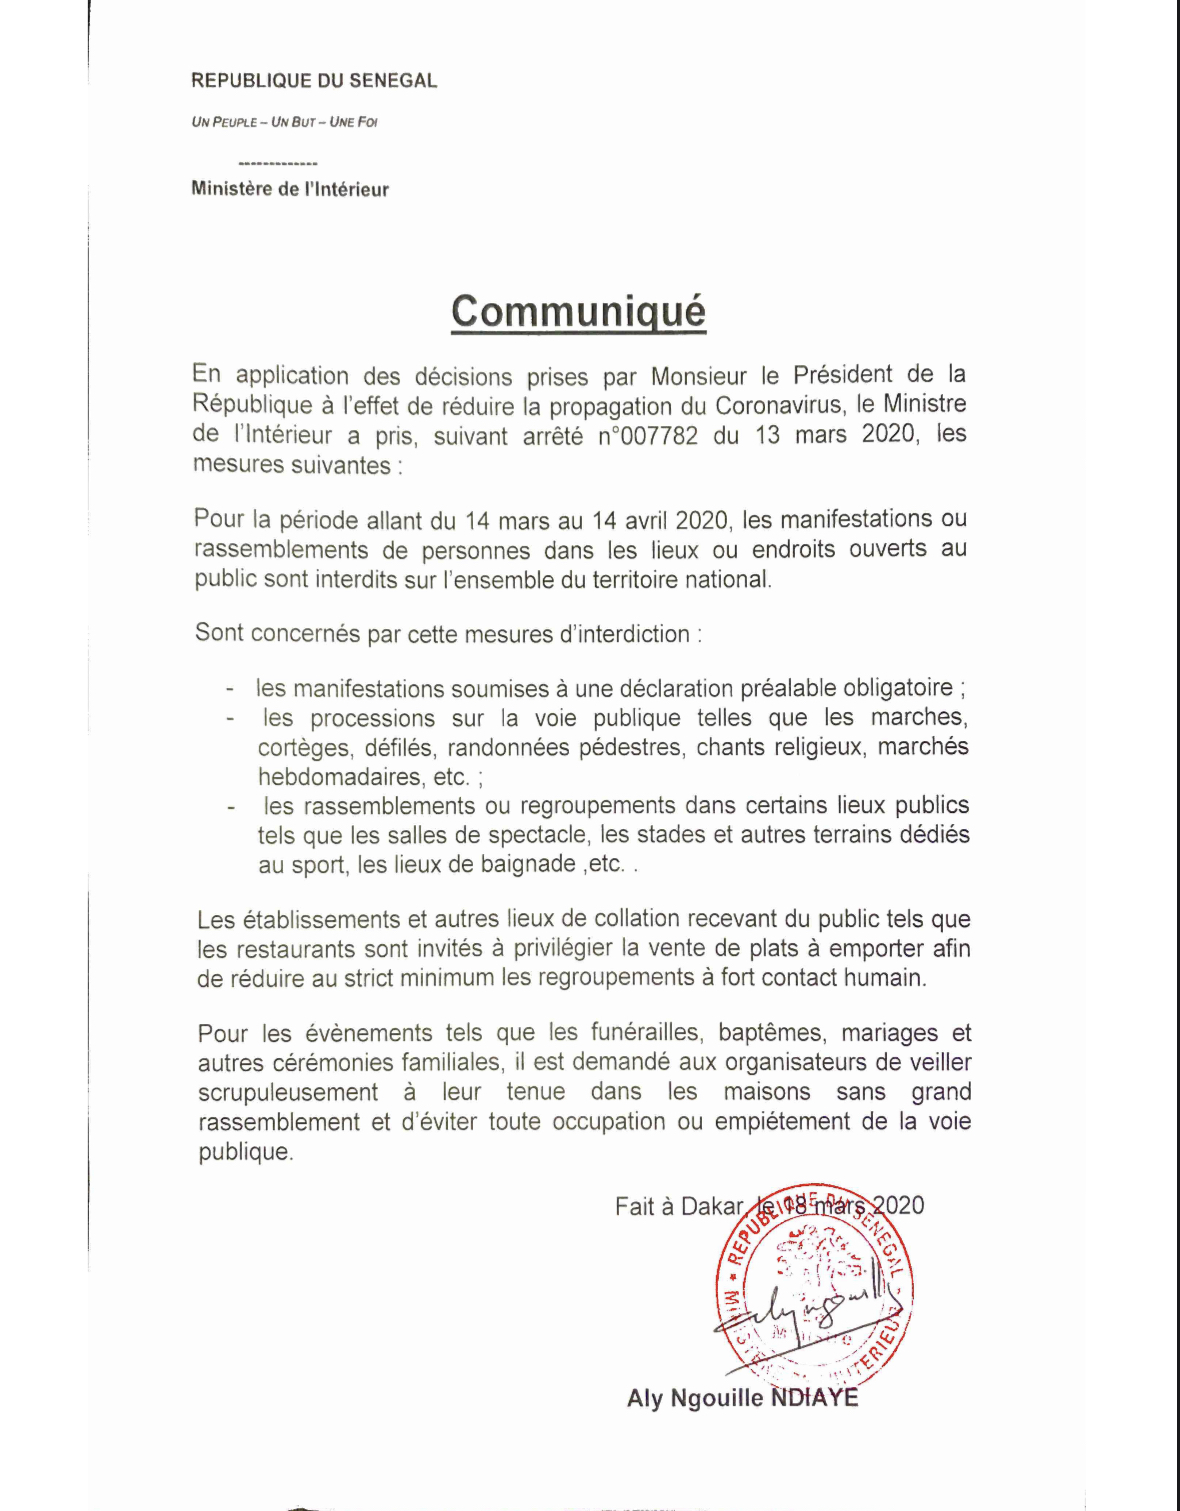 Interdiction de rassemblements : Aly Ngouille Ndiaye met en vigueur les mesures prises par le président Macky Sall (ARRÊTÉ)